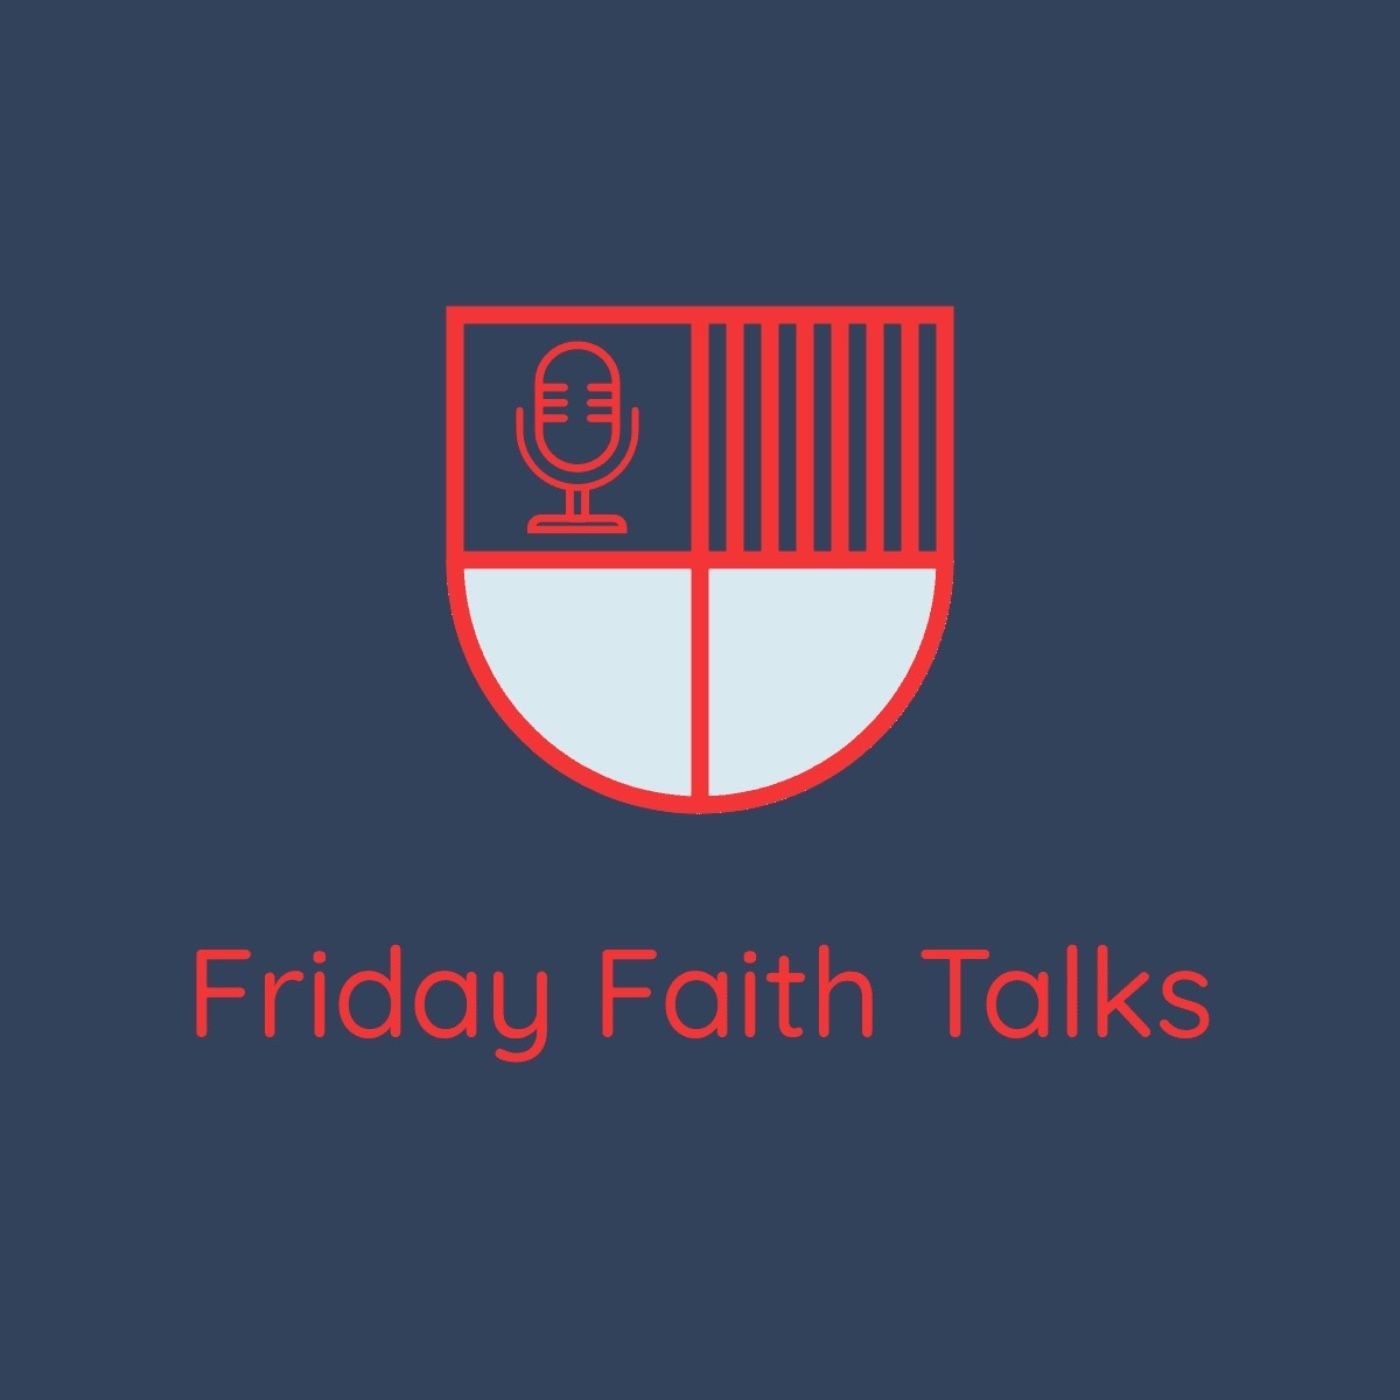 Friday Faith Talks